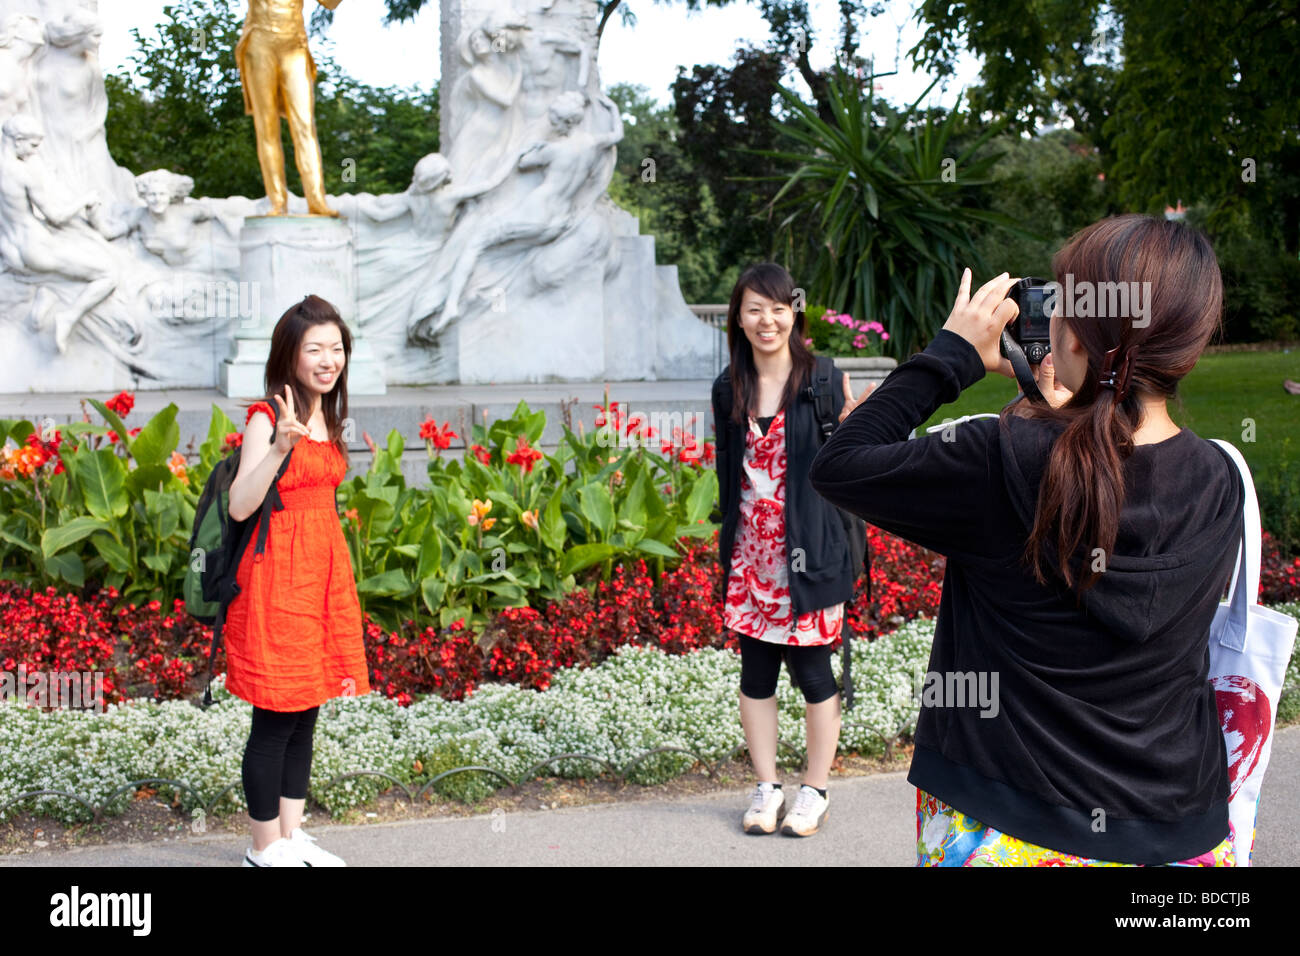 Touristen fotografieren vor der Statue von Johann Strauss II, Stadtpark, Wien, Österreich Stockfoto